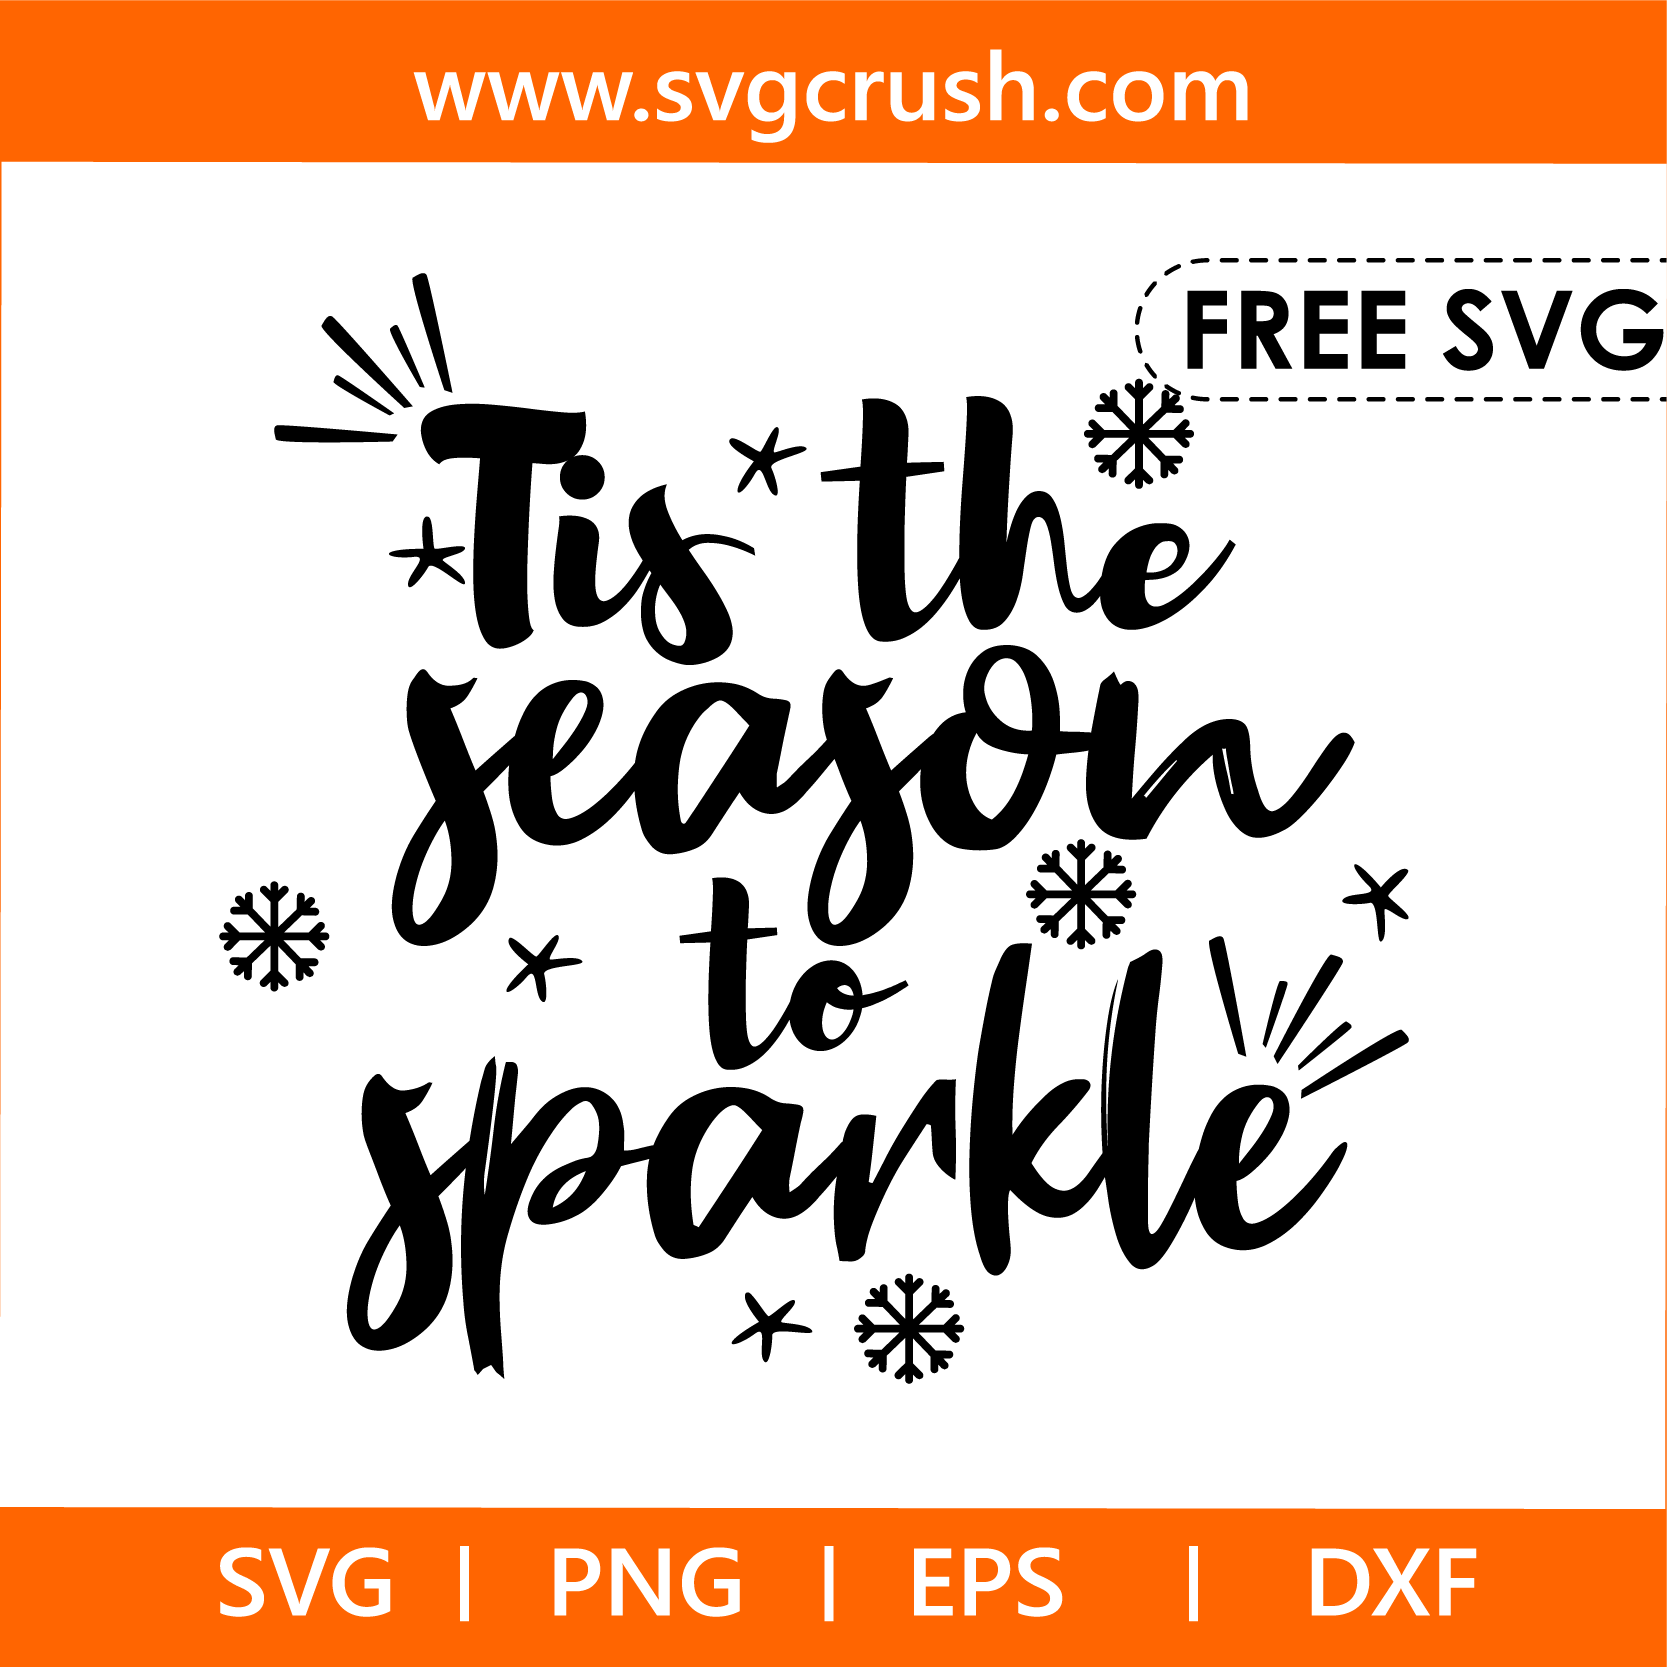 free tis-the-season-to-sparkle-006 svg